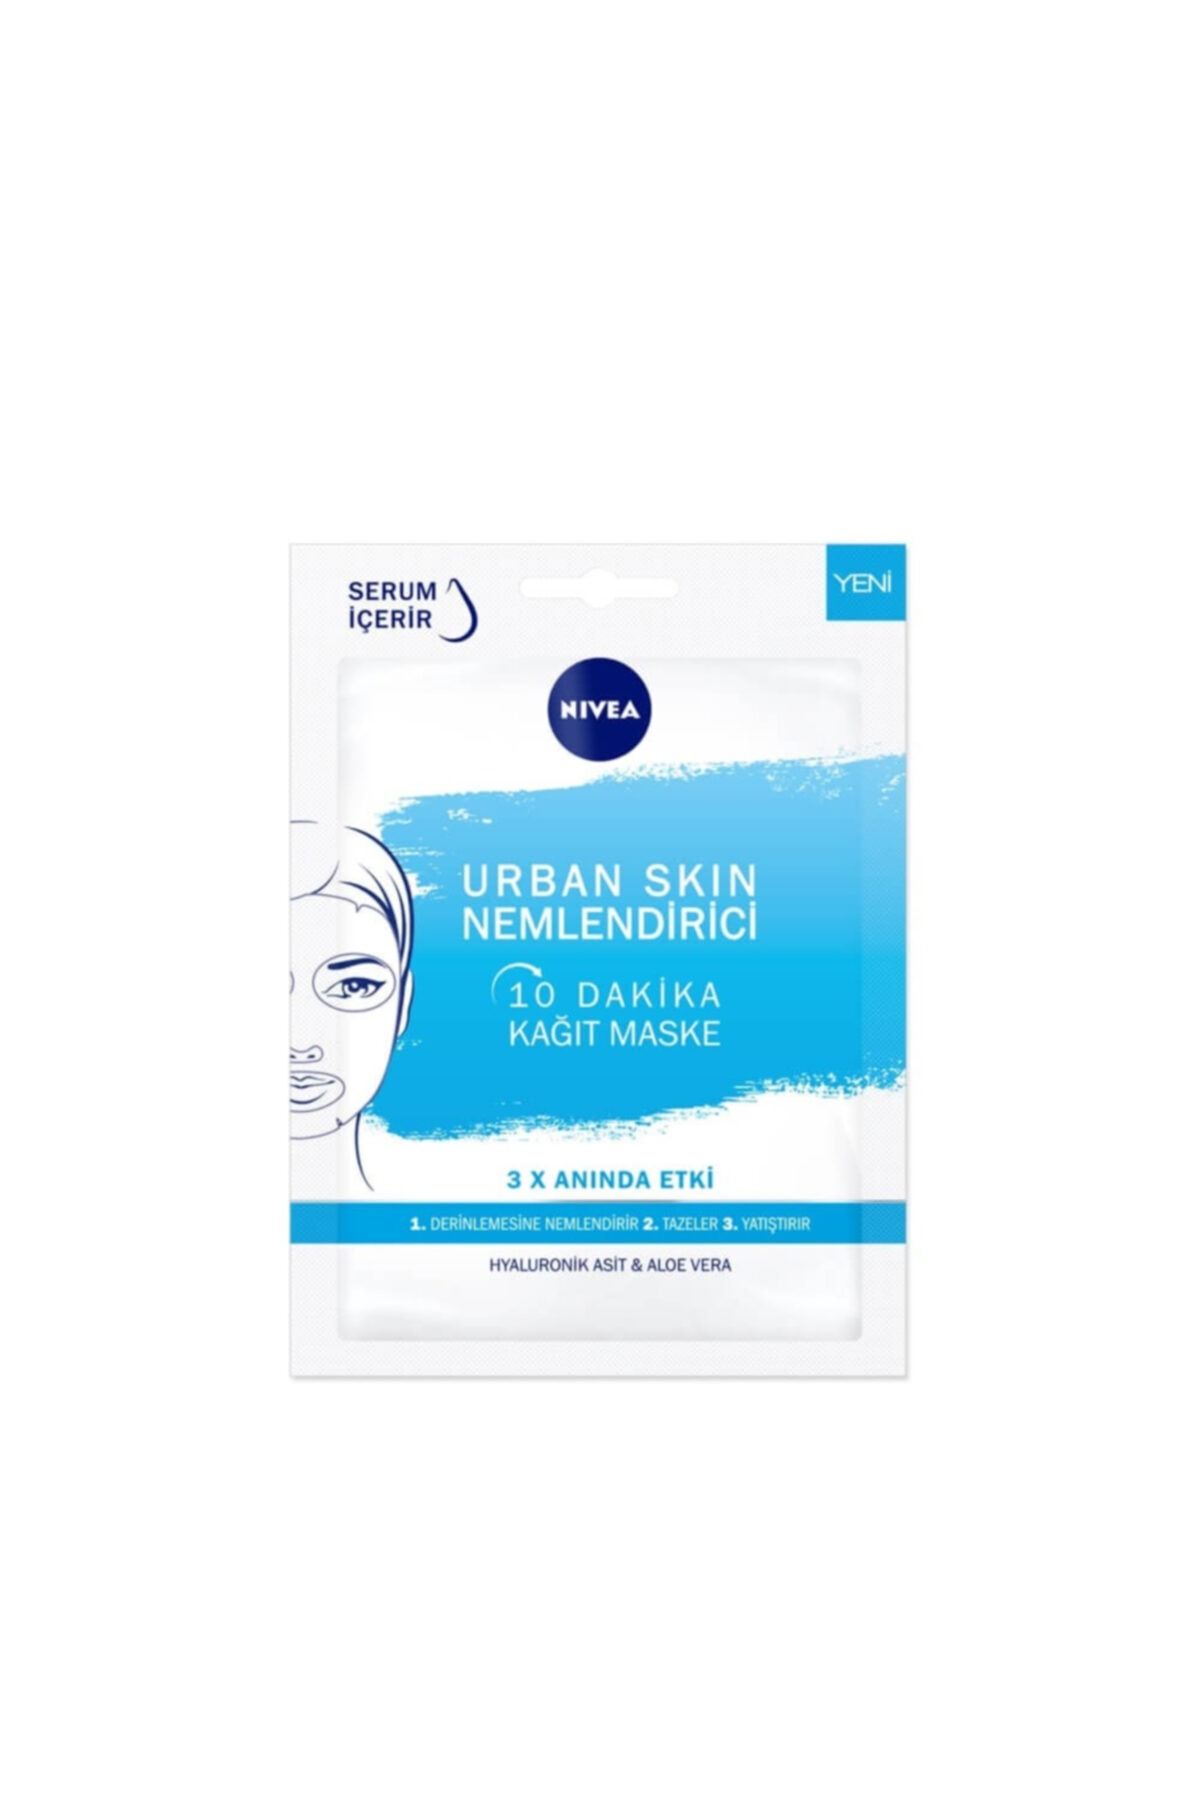 NIVEA Urban Skin Nemlendirici 10 Dakika Kağıt Maske Hyaluronik Asit & Aloe Vera